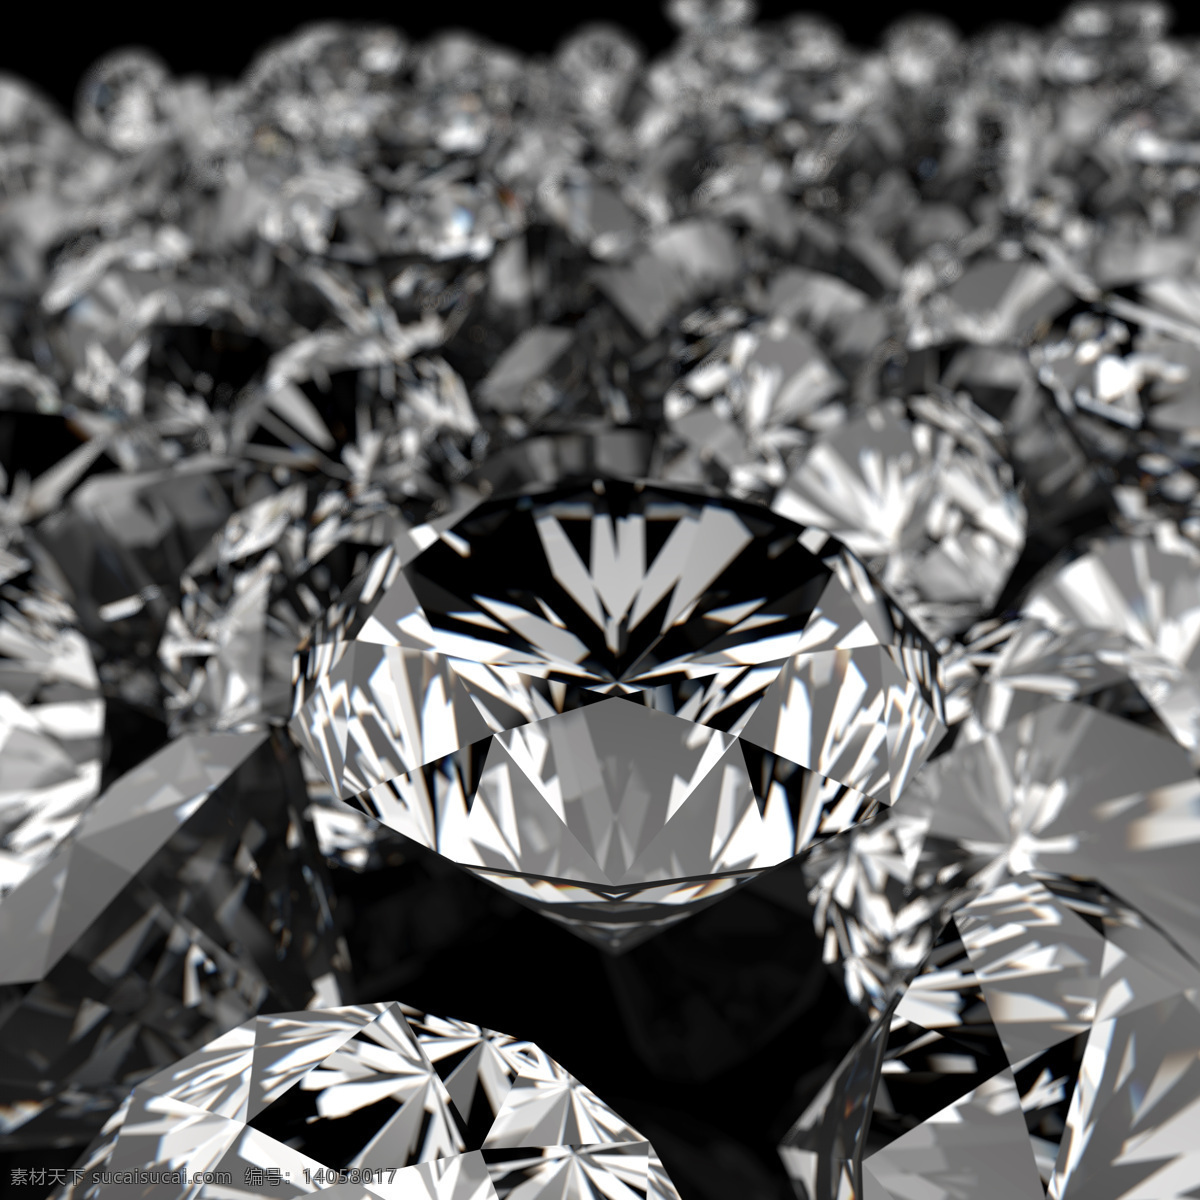 钻石广告素材 水晶 钻石 钻石摄影 钻石素材 珠宝 珠宝服饰 生活百科 黑色